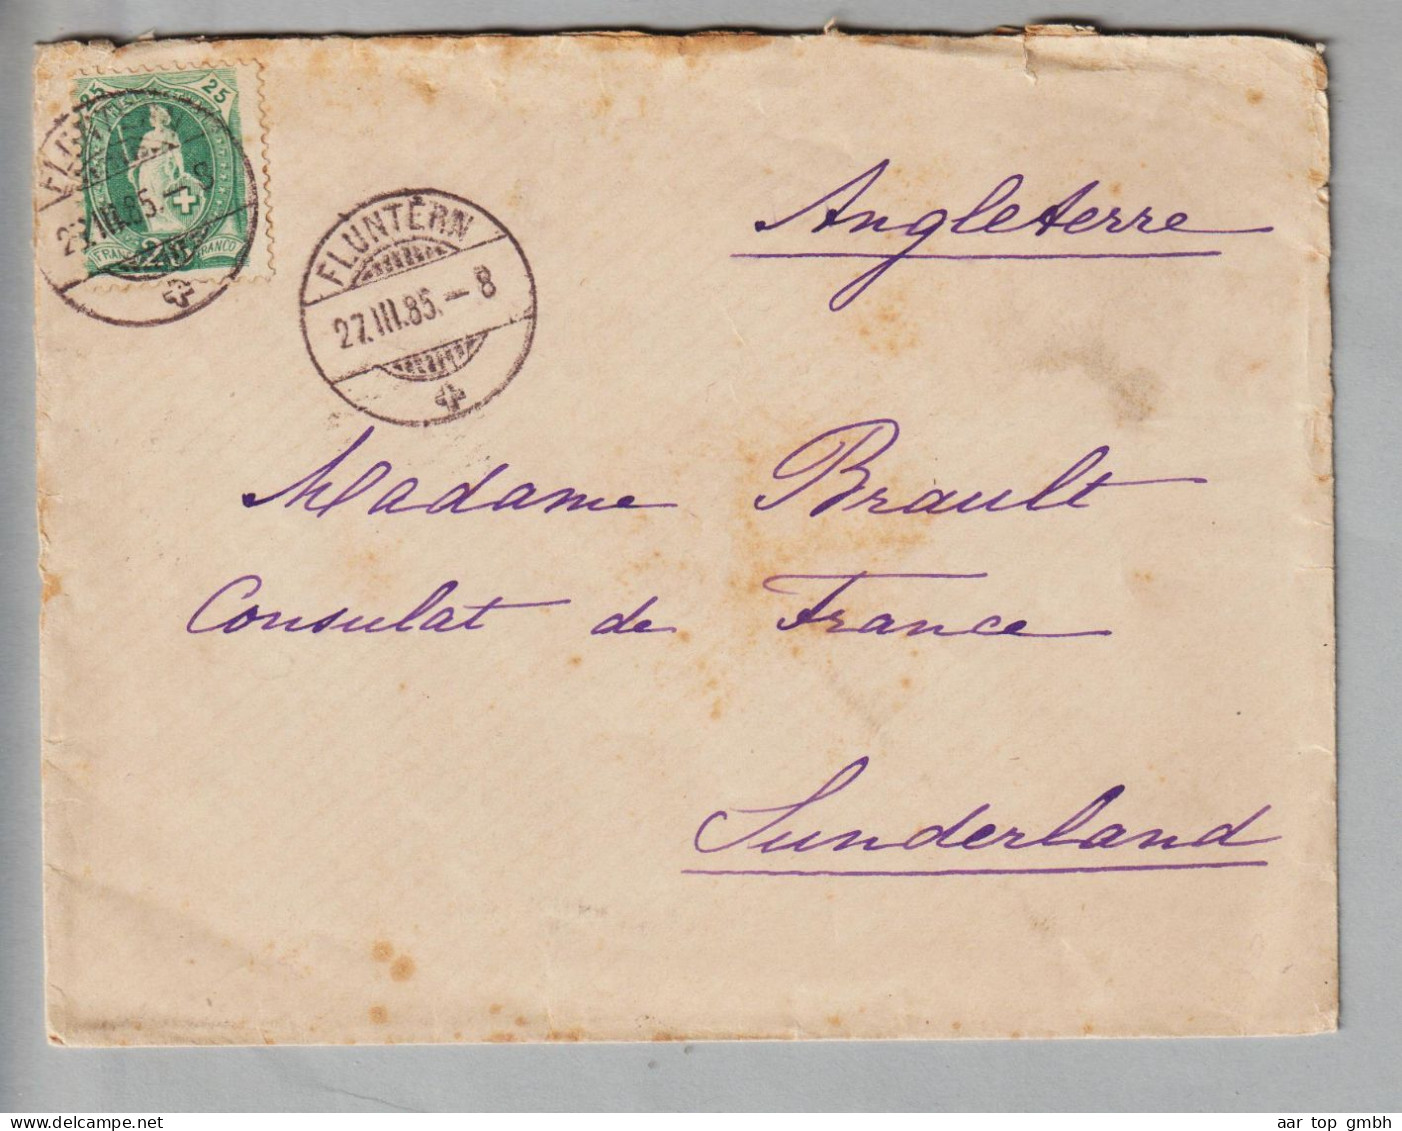 CH Heimat ZHs Fluntern 1885-03-27 Brief Nach Sunderland GB Consulat De France Mit 25Rp. Stehende H. SBK#67A - Briefe U. Dokumente